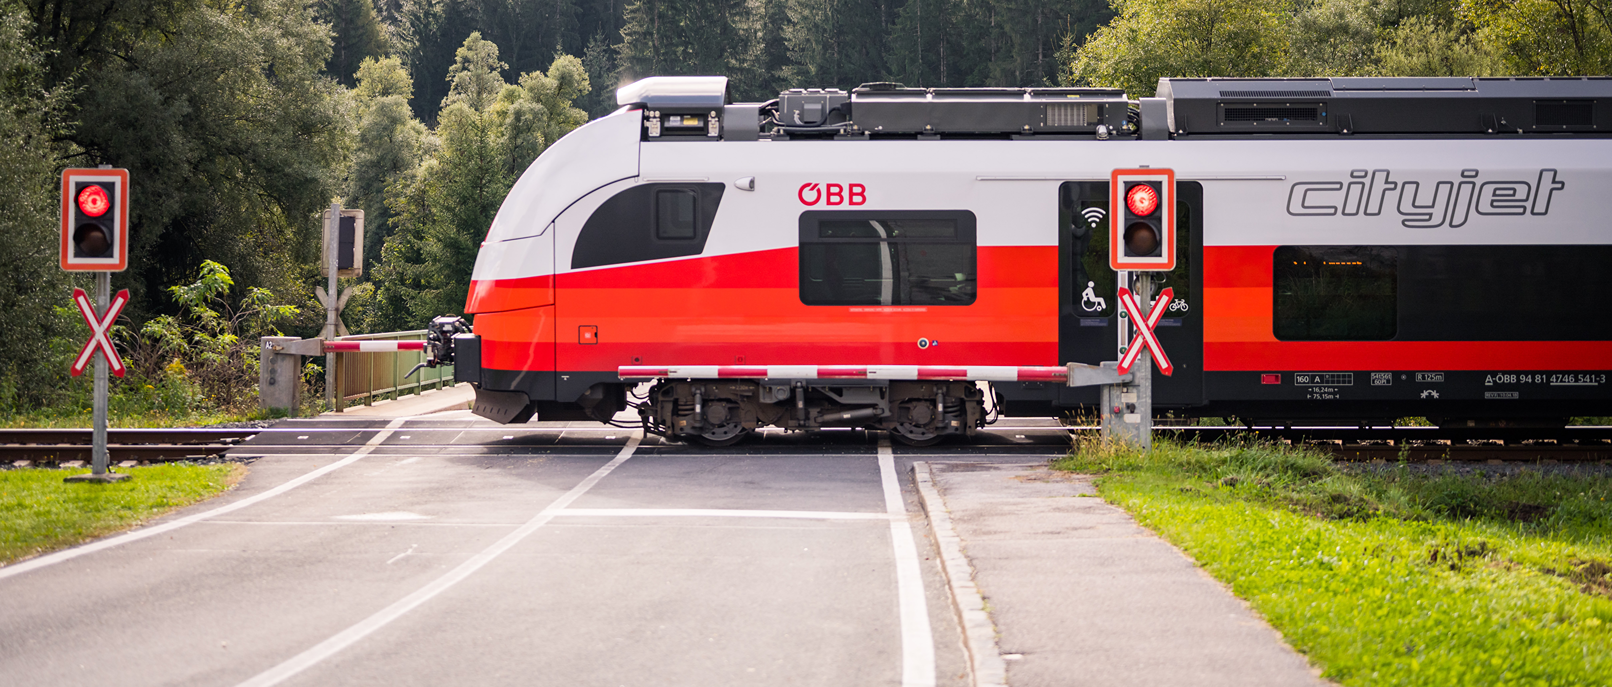 Cityjet der ÖBB fährt in Kärnten über Bahnübergang.